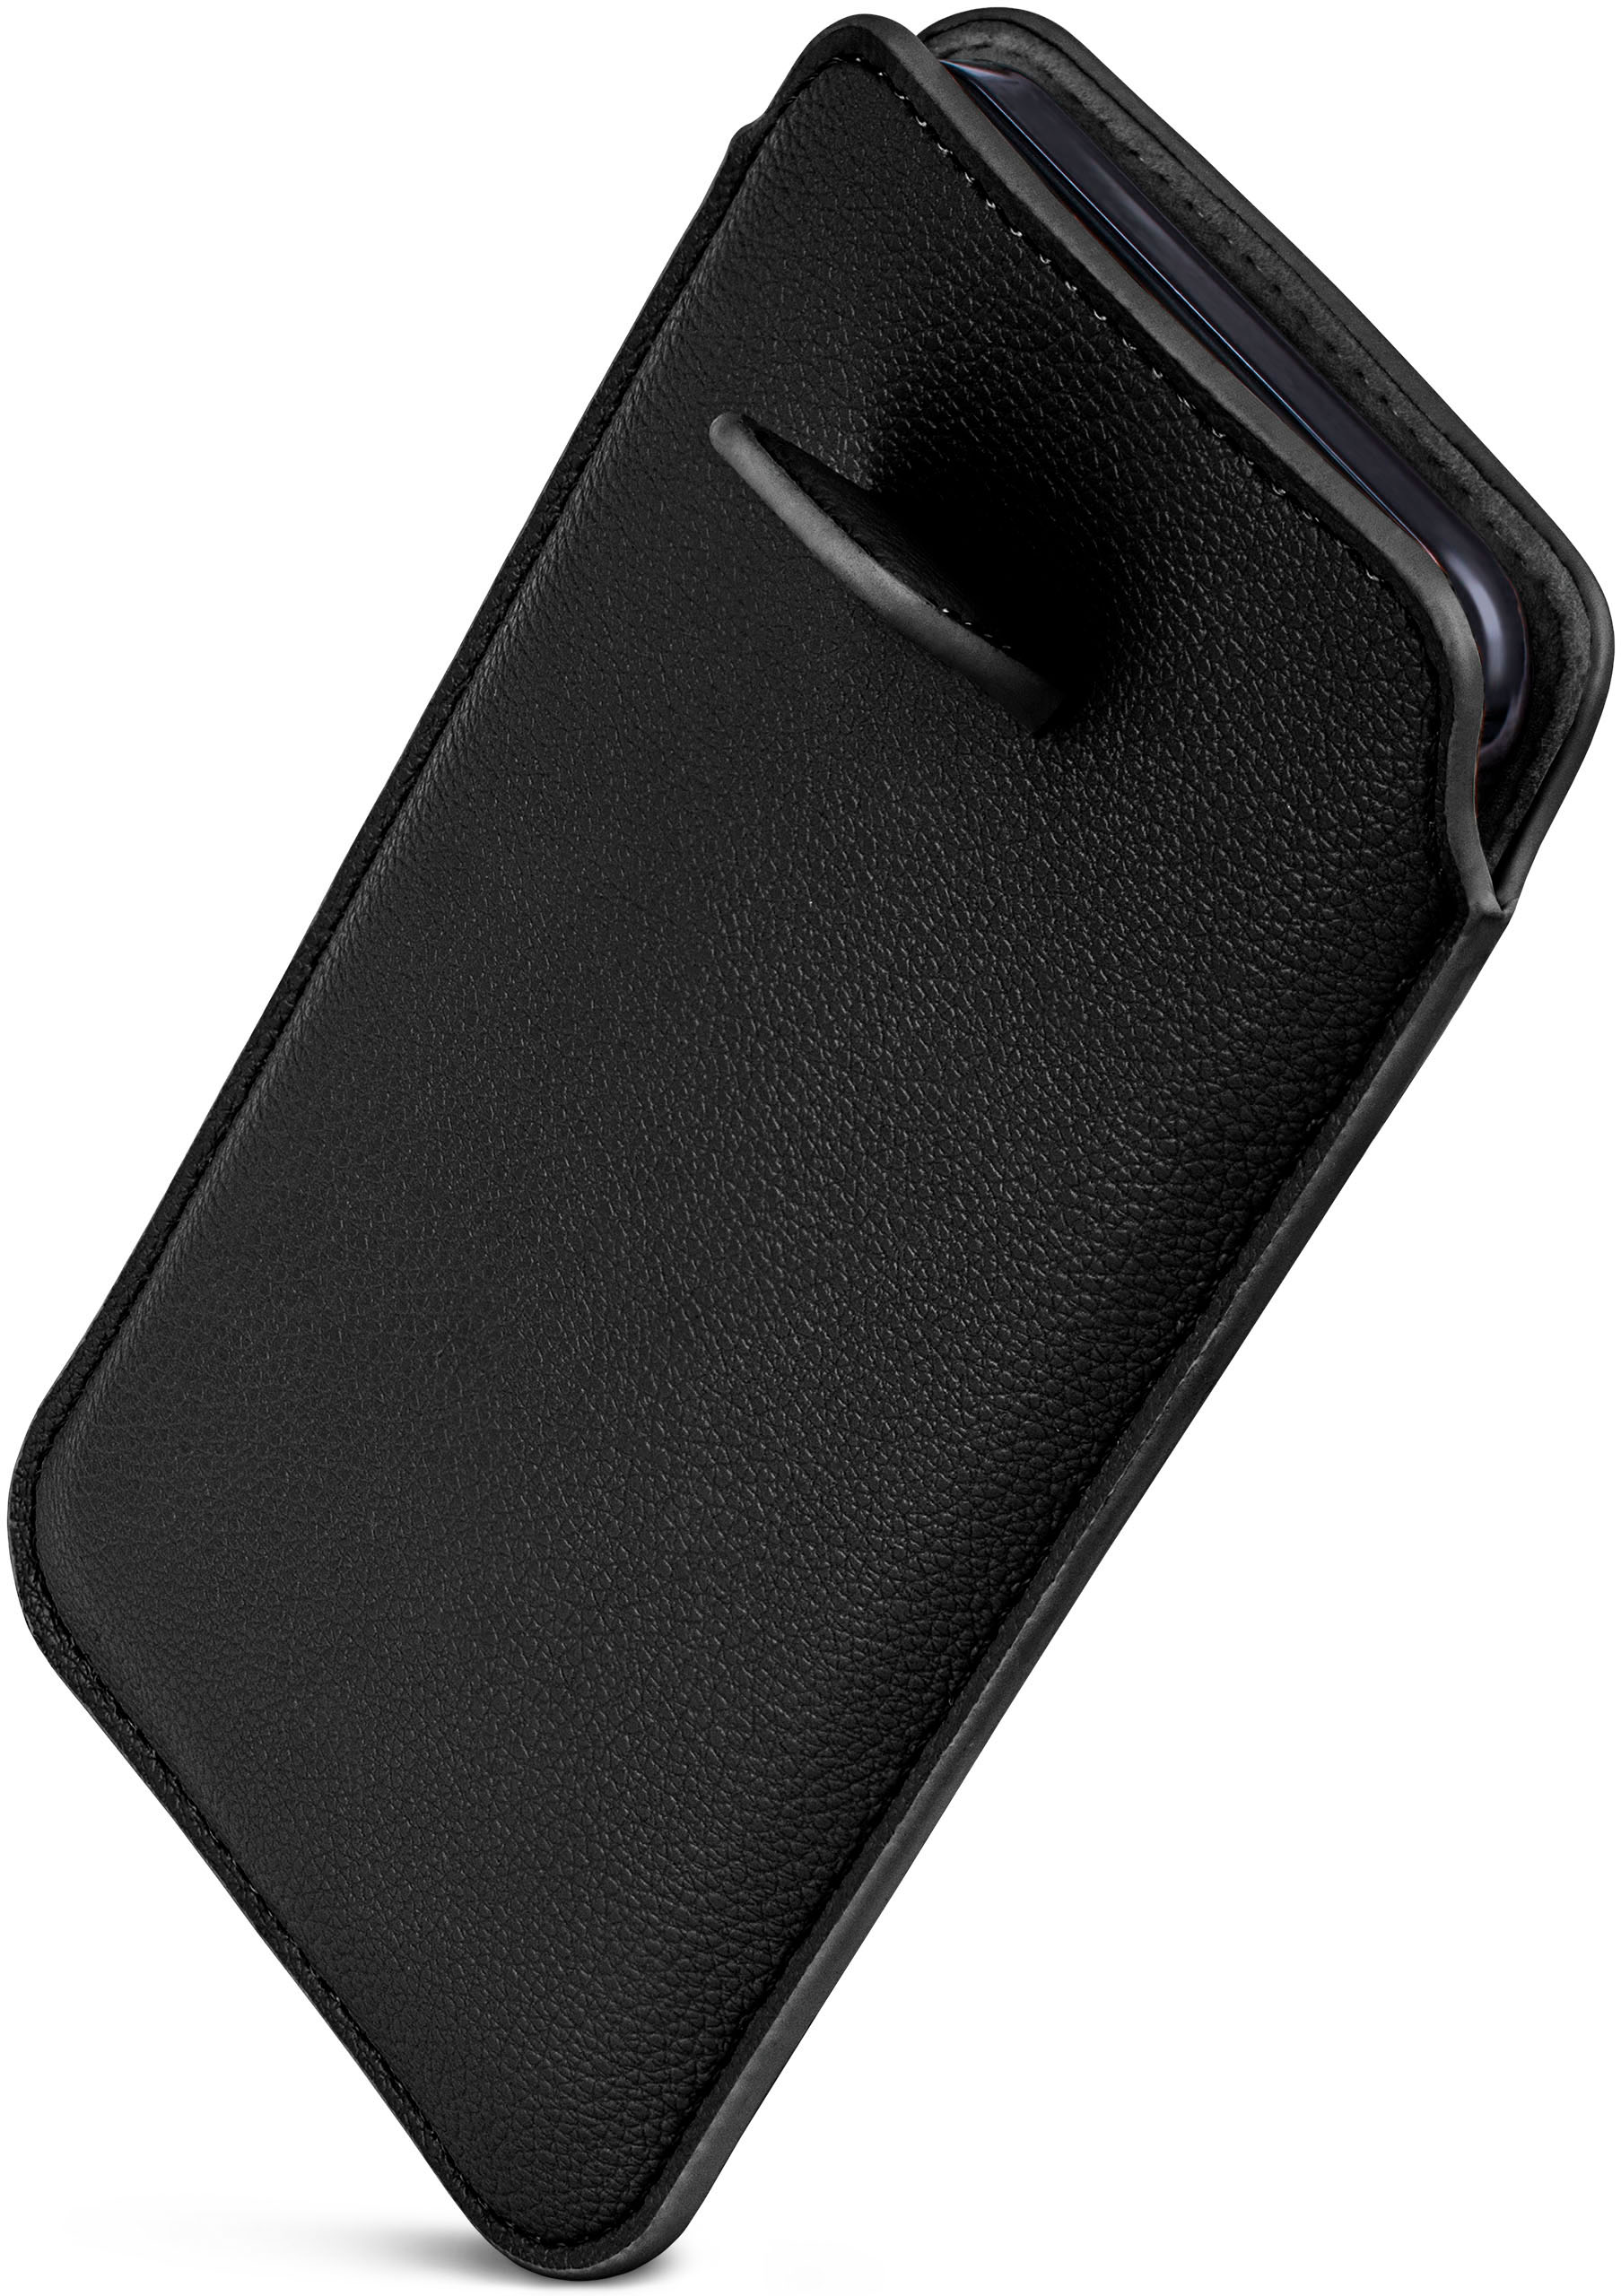 Nord, OnePlus, mit Cover, Schwarz Zuglasche, ONEFLOW Full Einsteckhülle